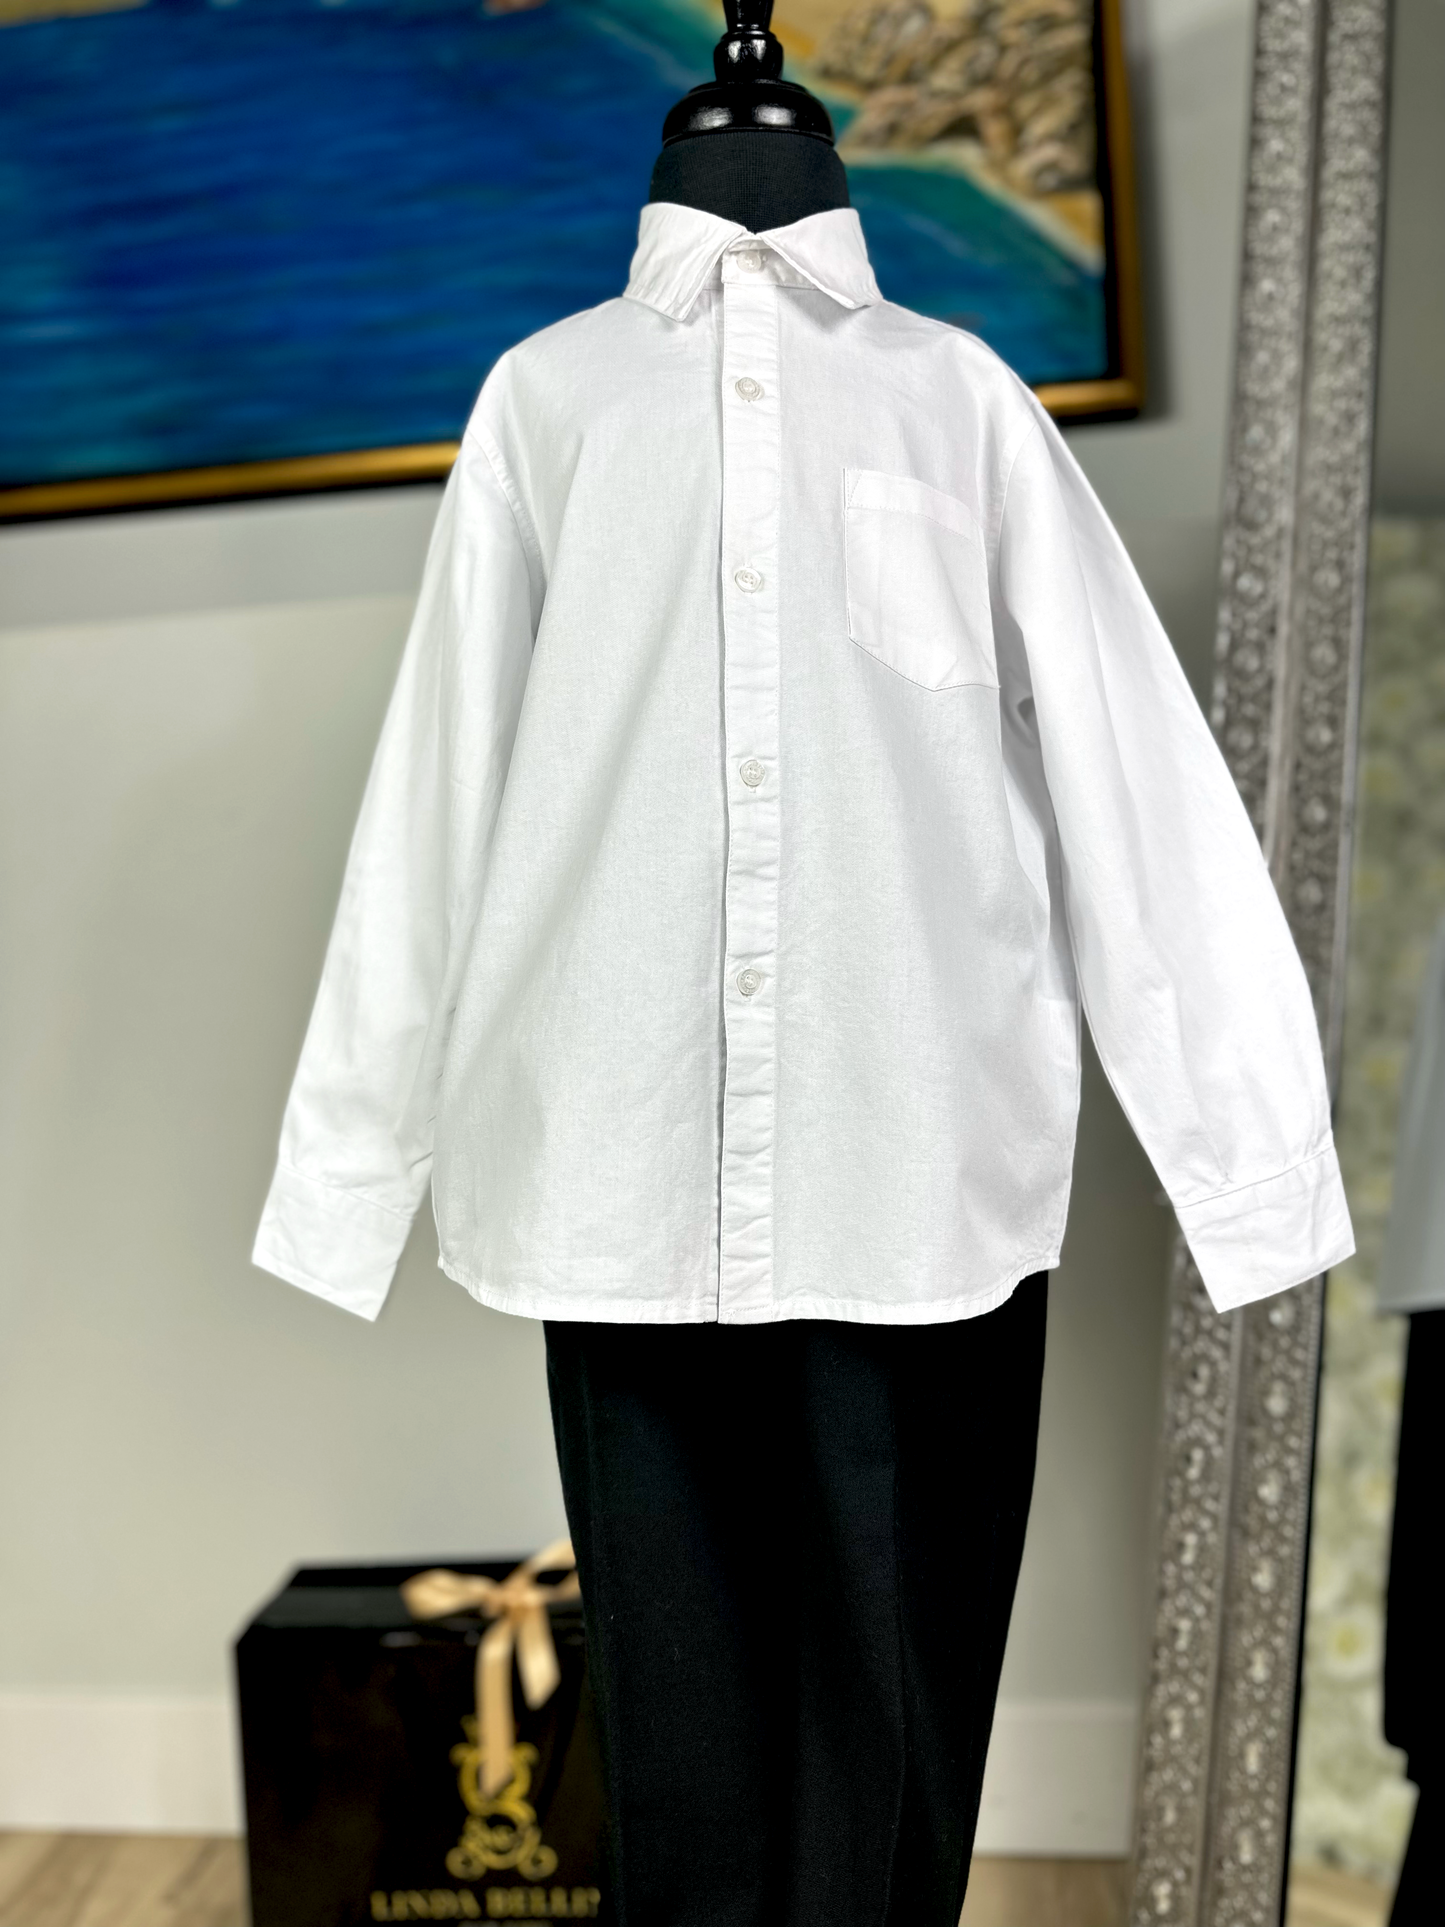 LB Cotton Dress Shirt - White